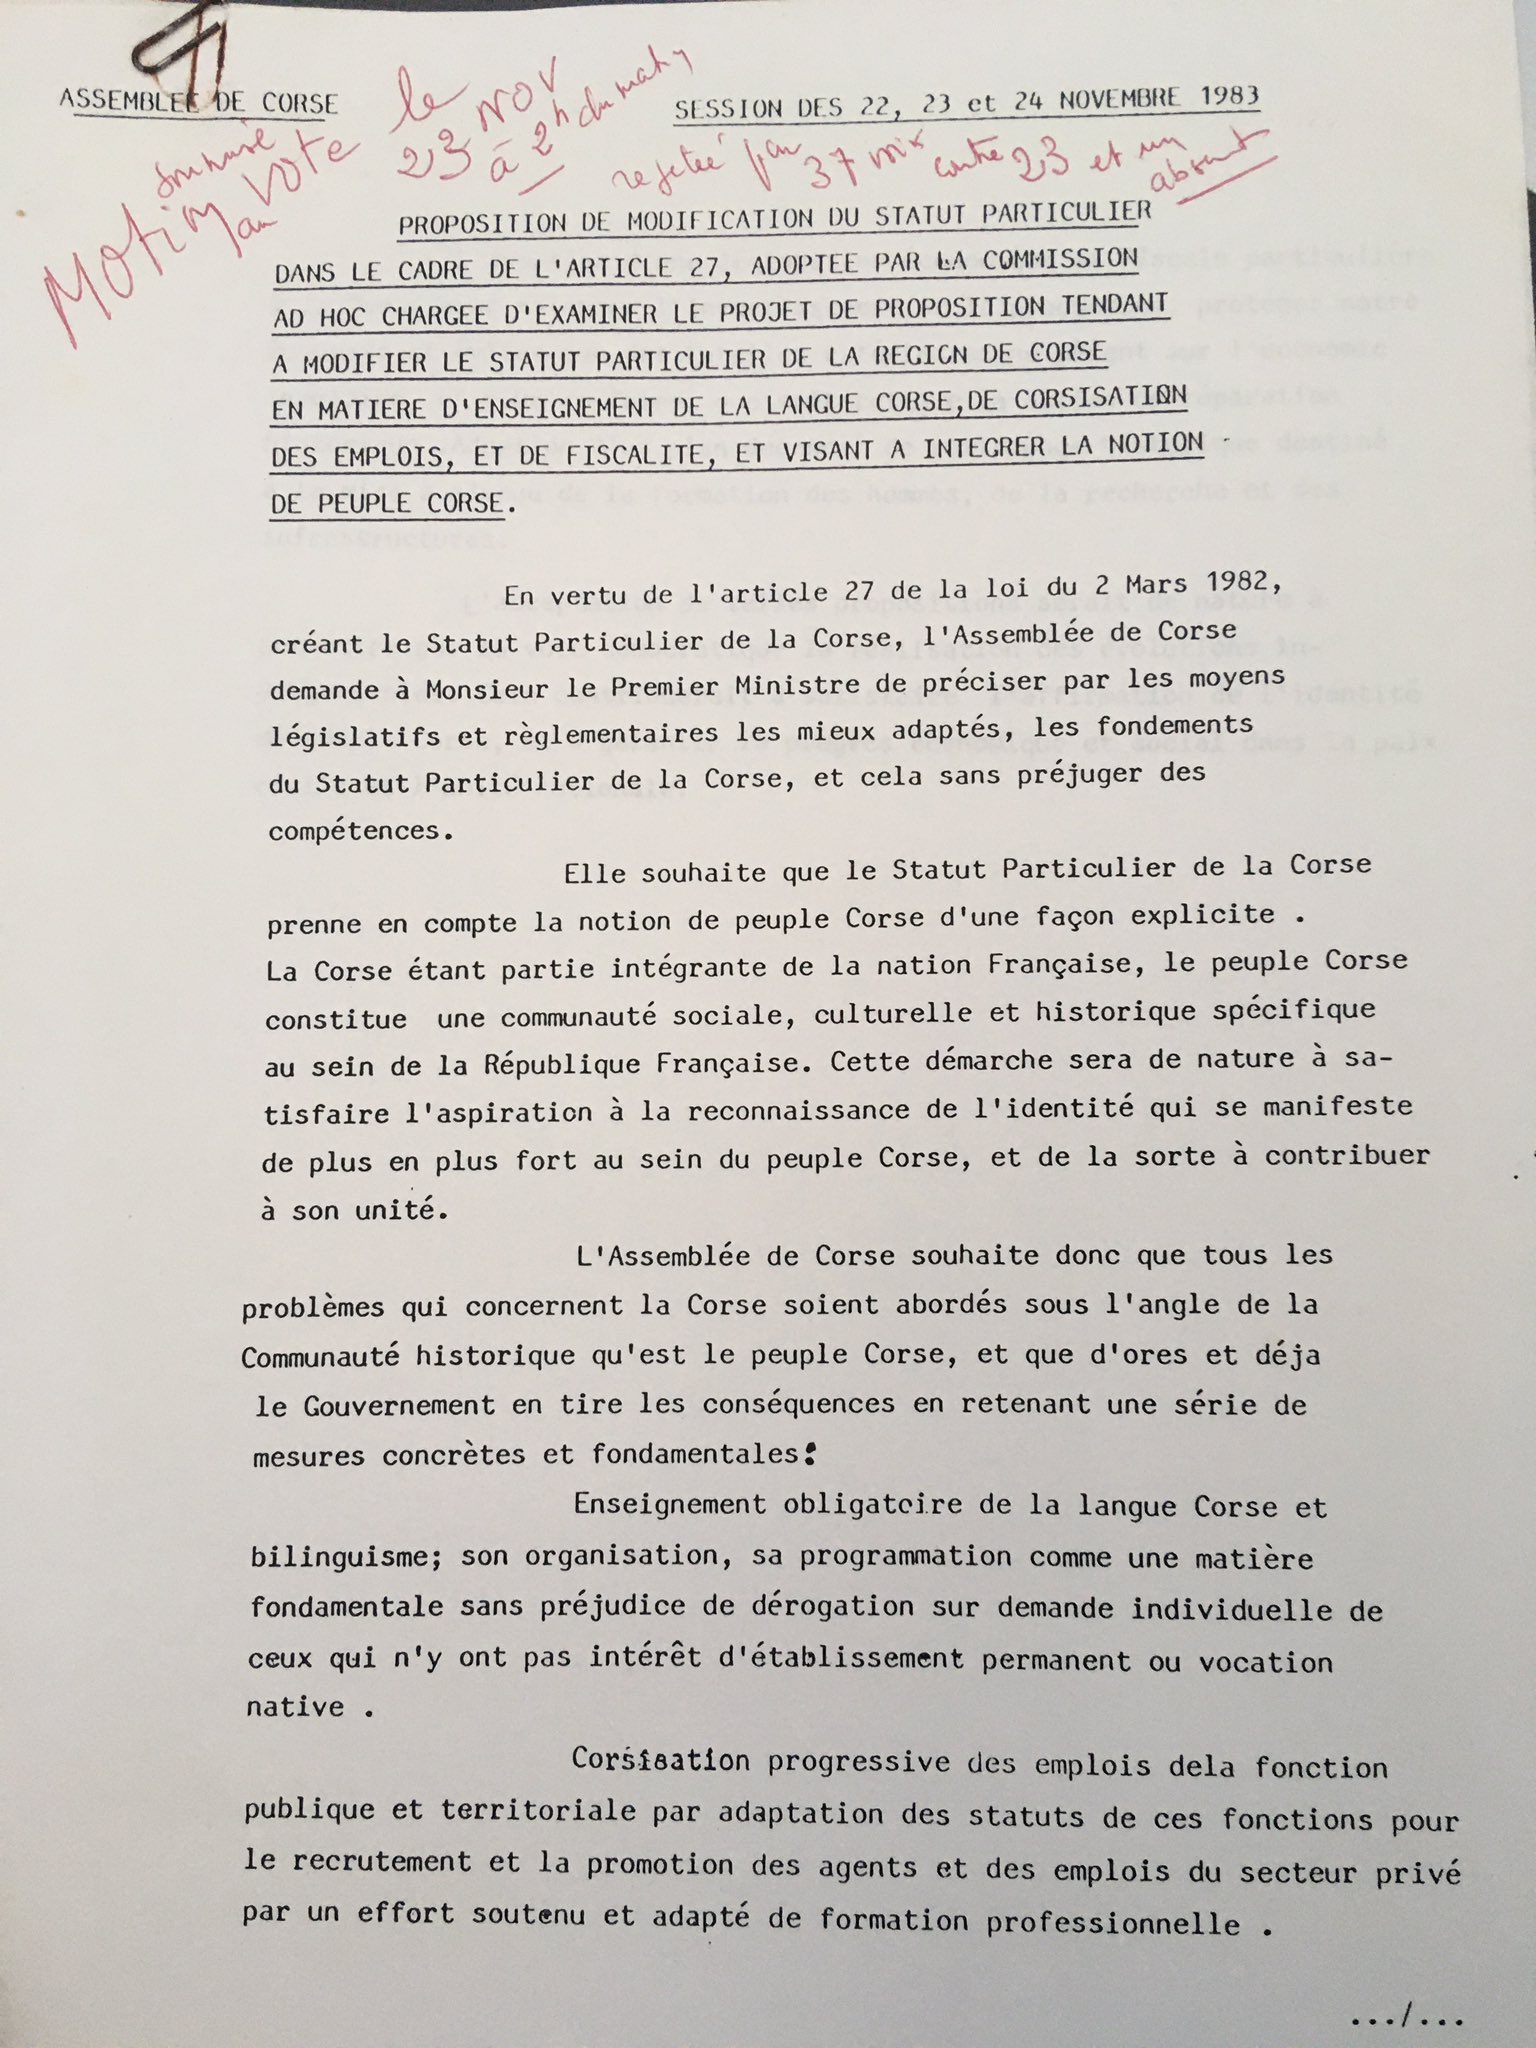 Assemblée de Corse - motion sur la reconnaissance du peuple corse - 1983